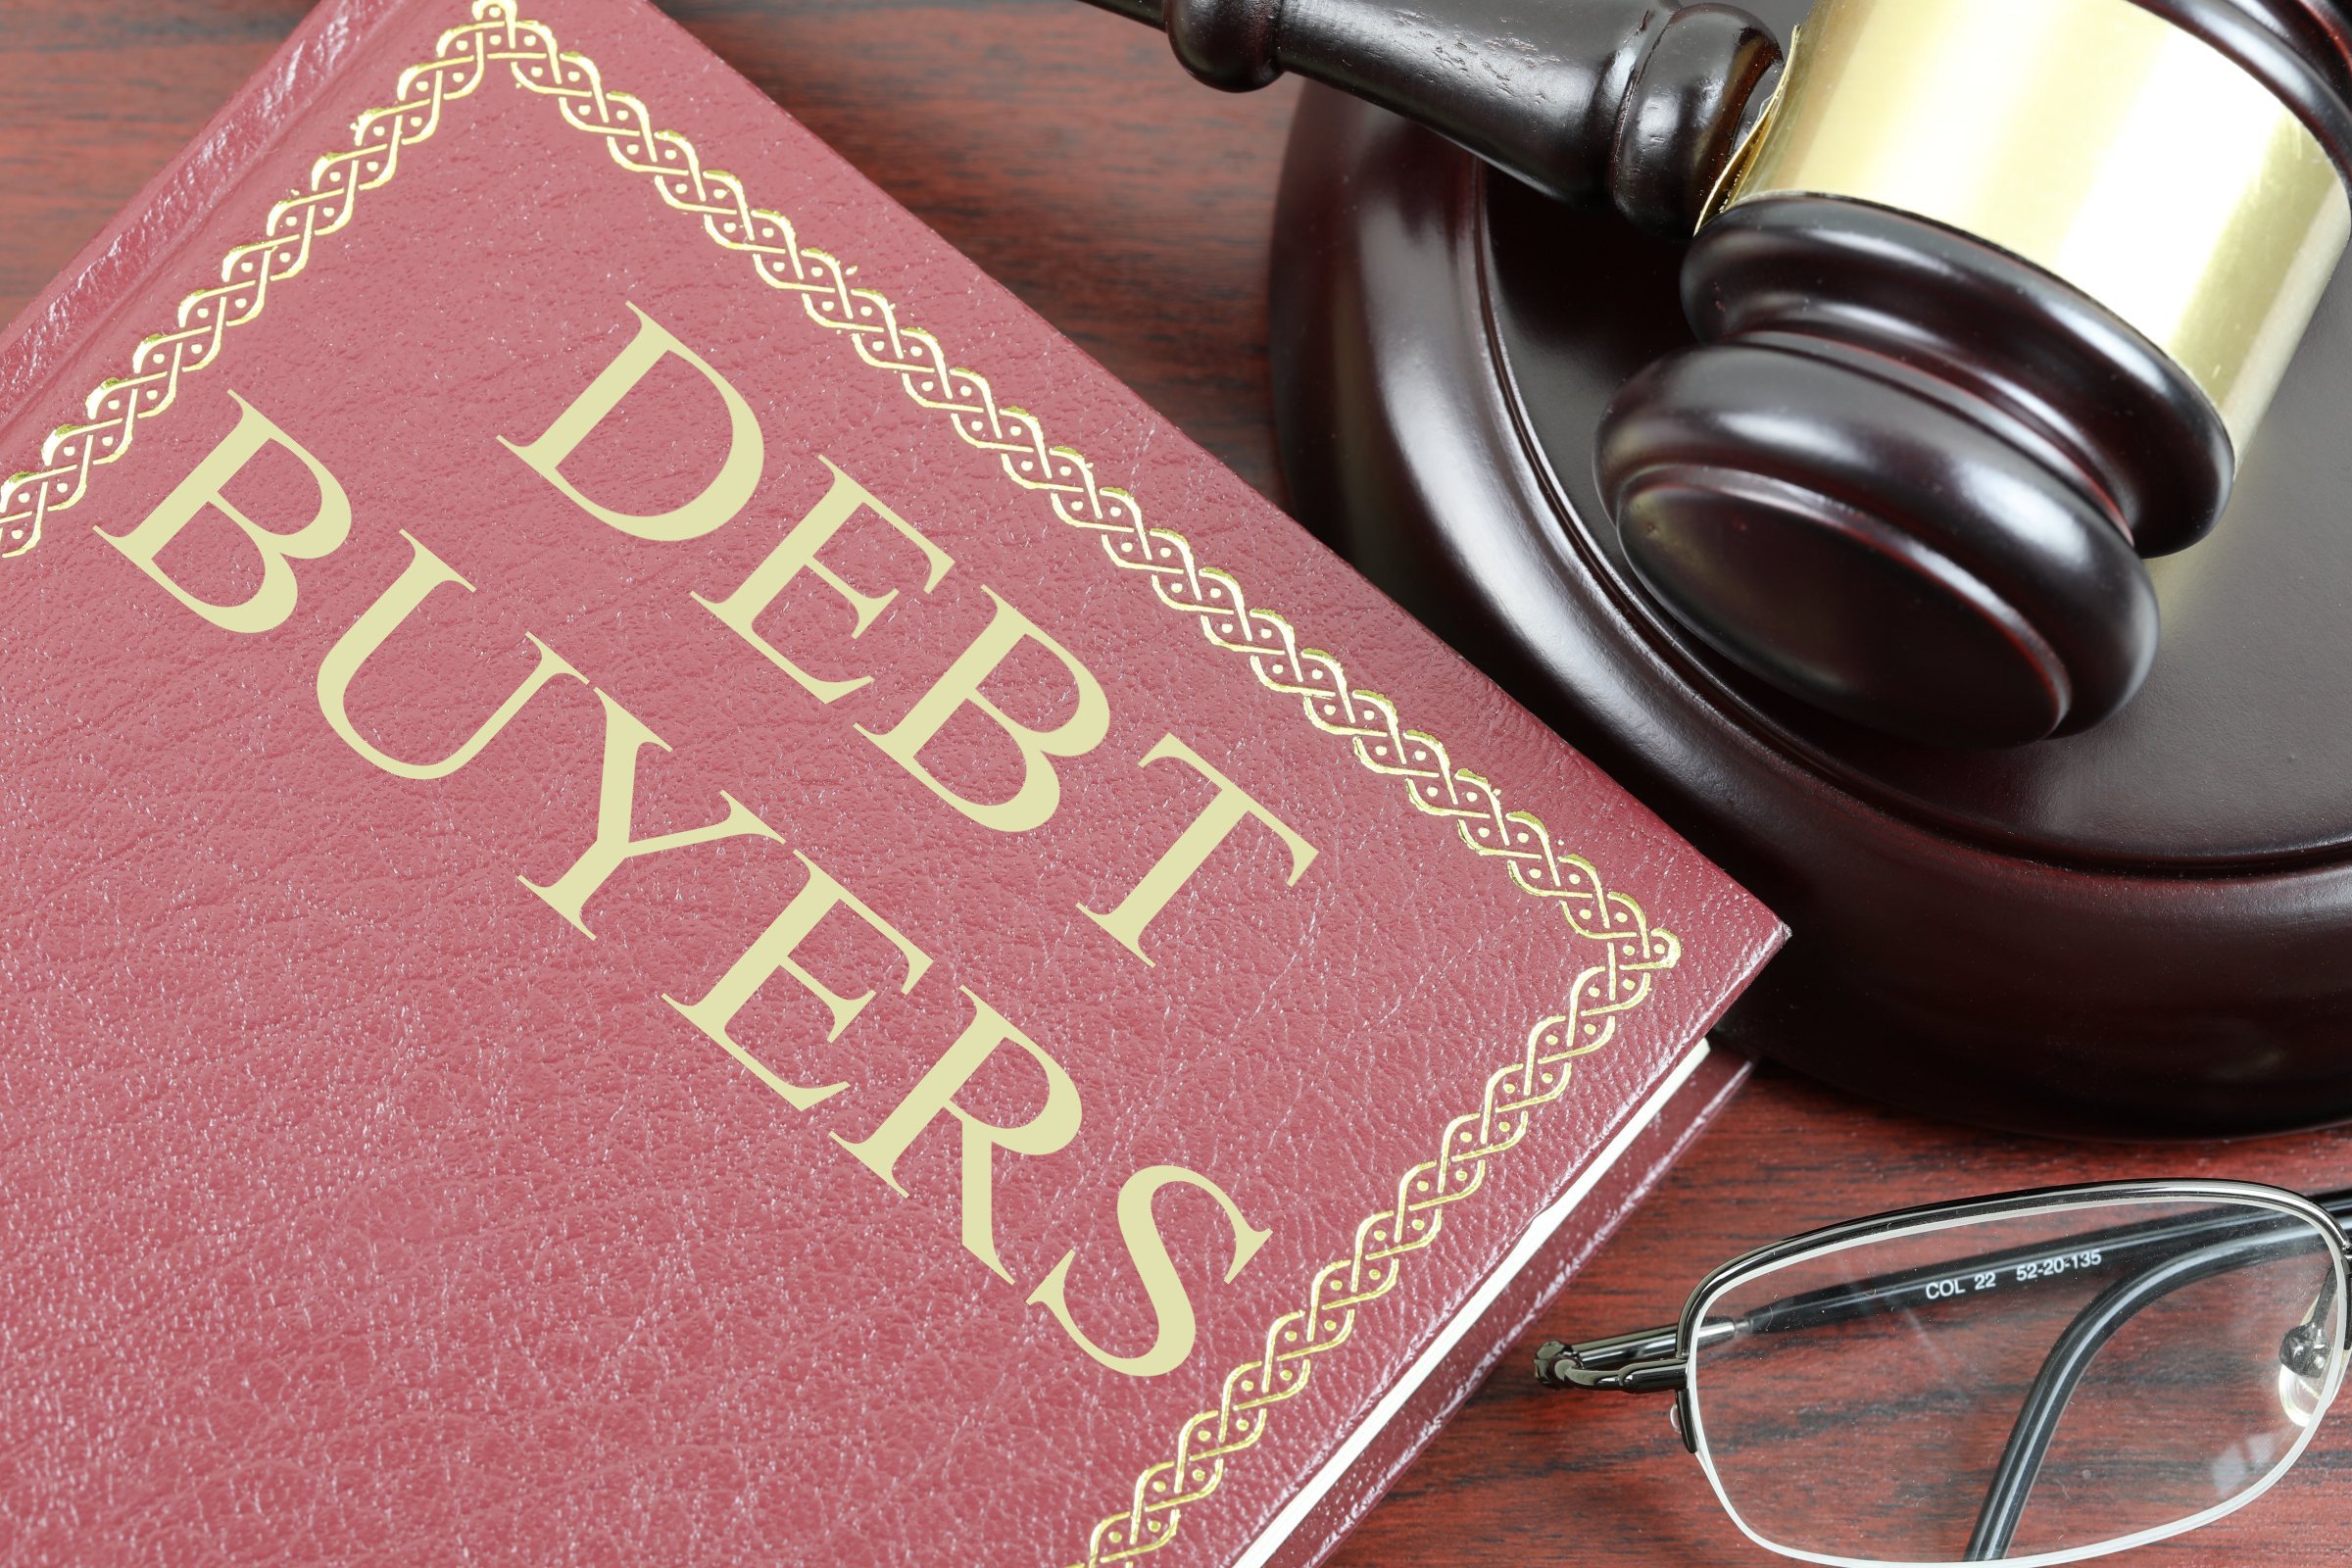 debt buyers